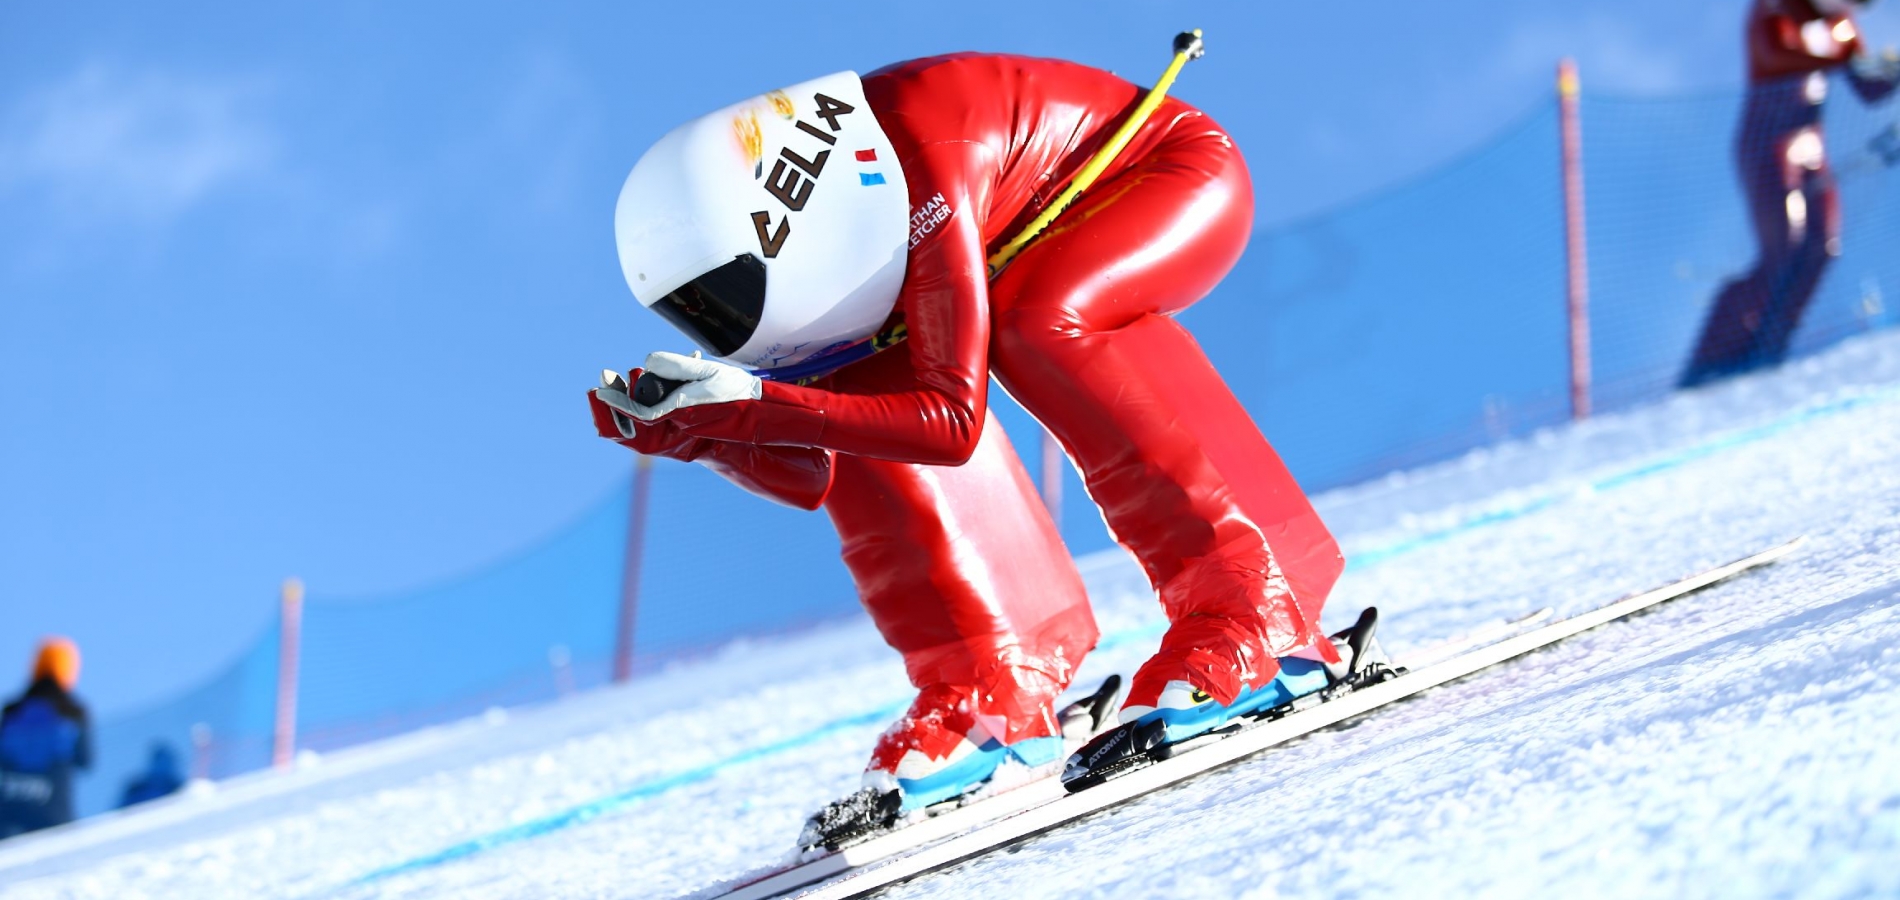 Evènements Grandvalira Andorre Découvrez les évènements majeurs de la saison 2017-18 à Grandvalira. Les meilleures compétitions de ski, snowboard, freeride, freestyle, vitesse et beaucoup de divertissement vous attend à Le Domaine de la Neige en Andorre. 